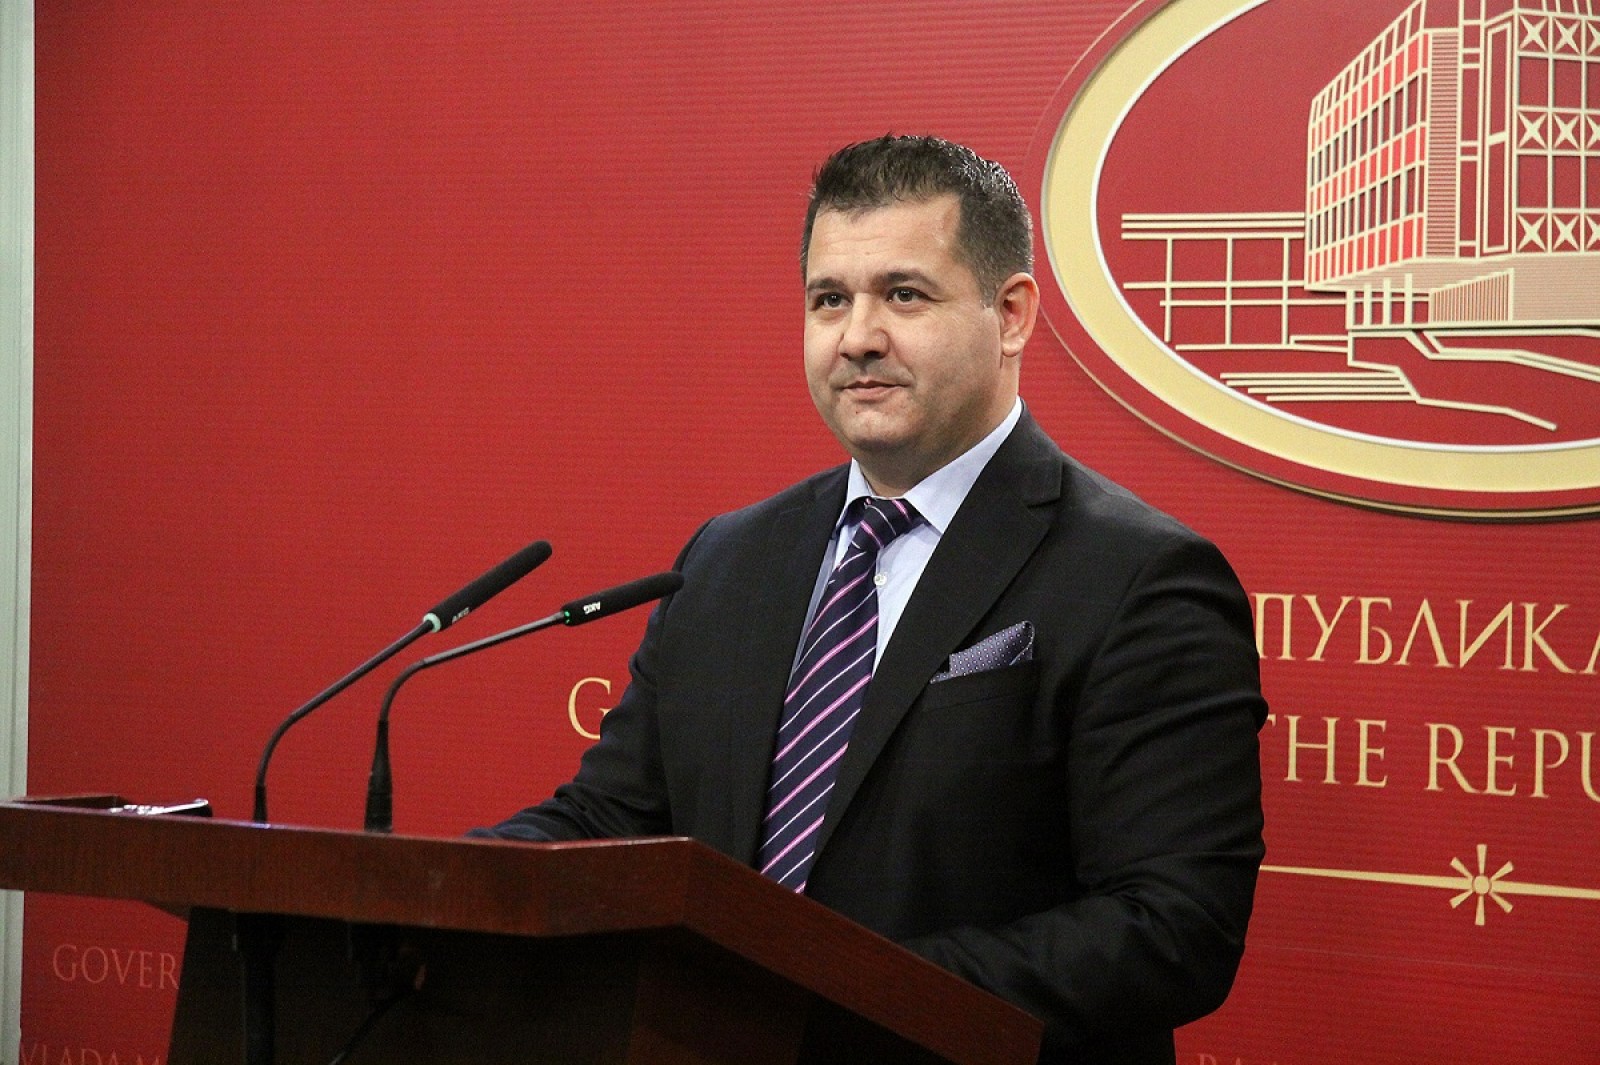 Σλαβικής καταγωγής Σκοπιανός κυβερνητικός εκπρόσωπος προς Μακεδόνες: «Όλοι Μακεδόνες είμαστε»!